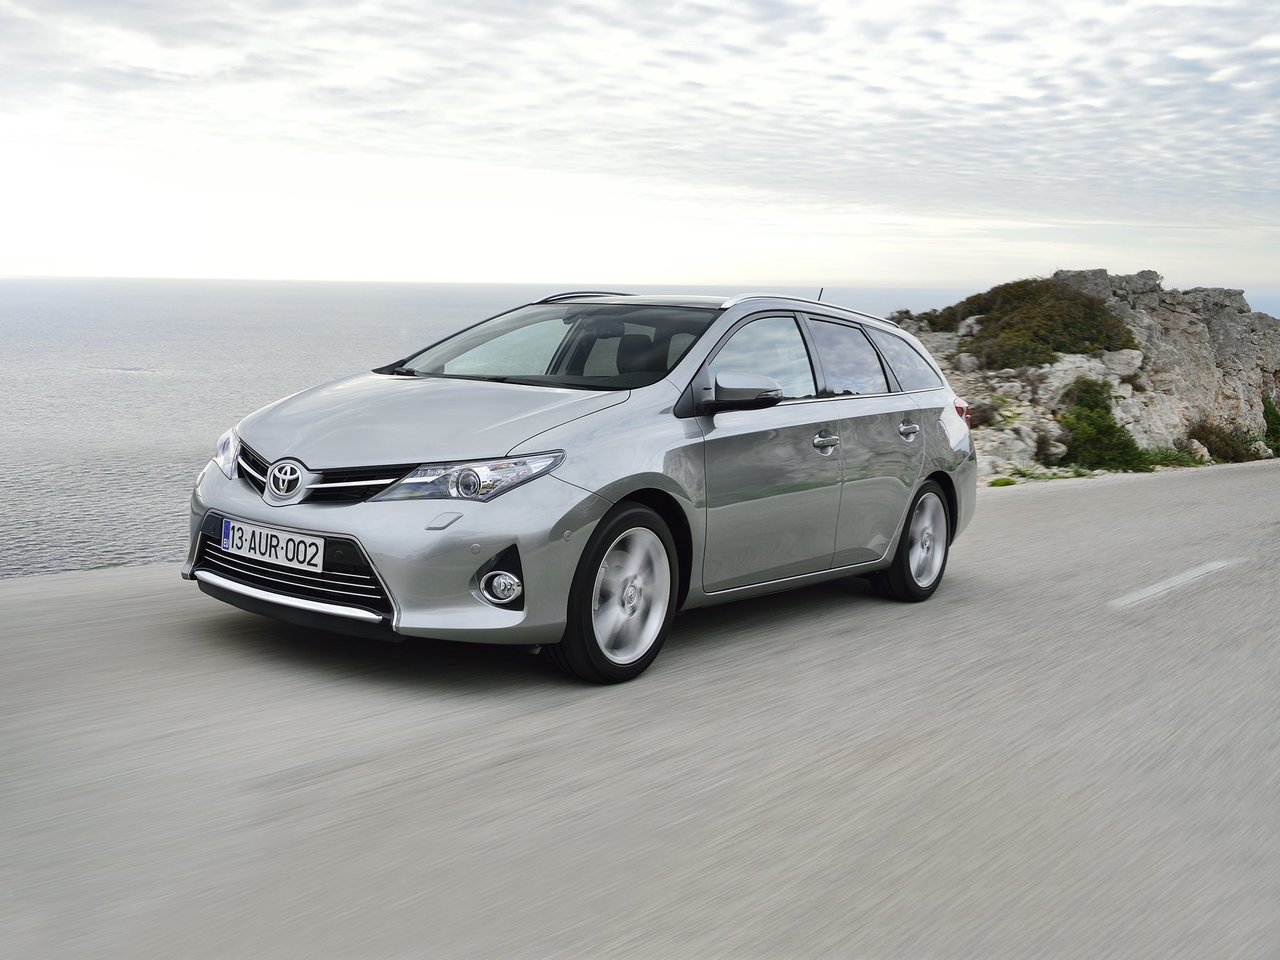 Расход газа трёх комплектаций универсала пять дверей Toyota Auris. Разница стоимости заправки газом и бензином. Автономный пробег до и после установки ГБО.